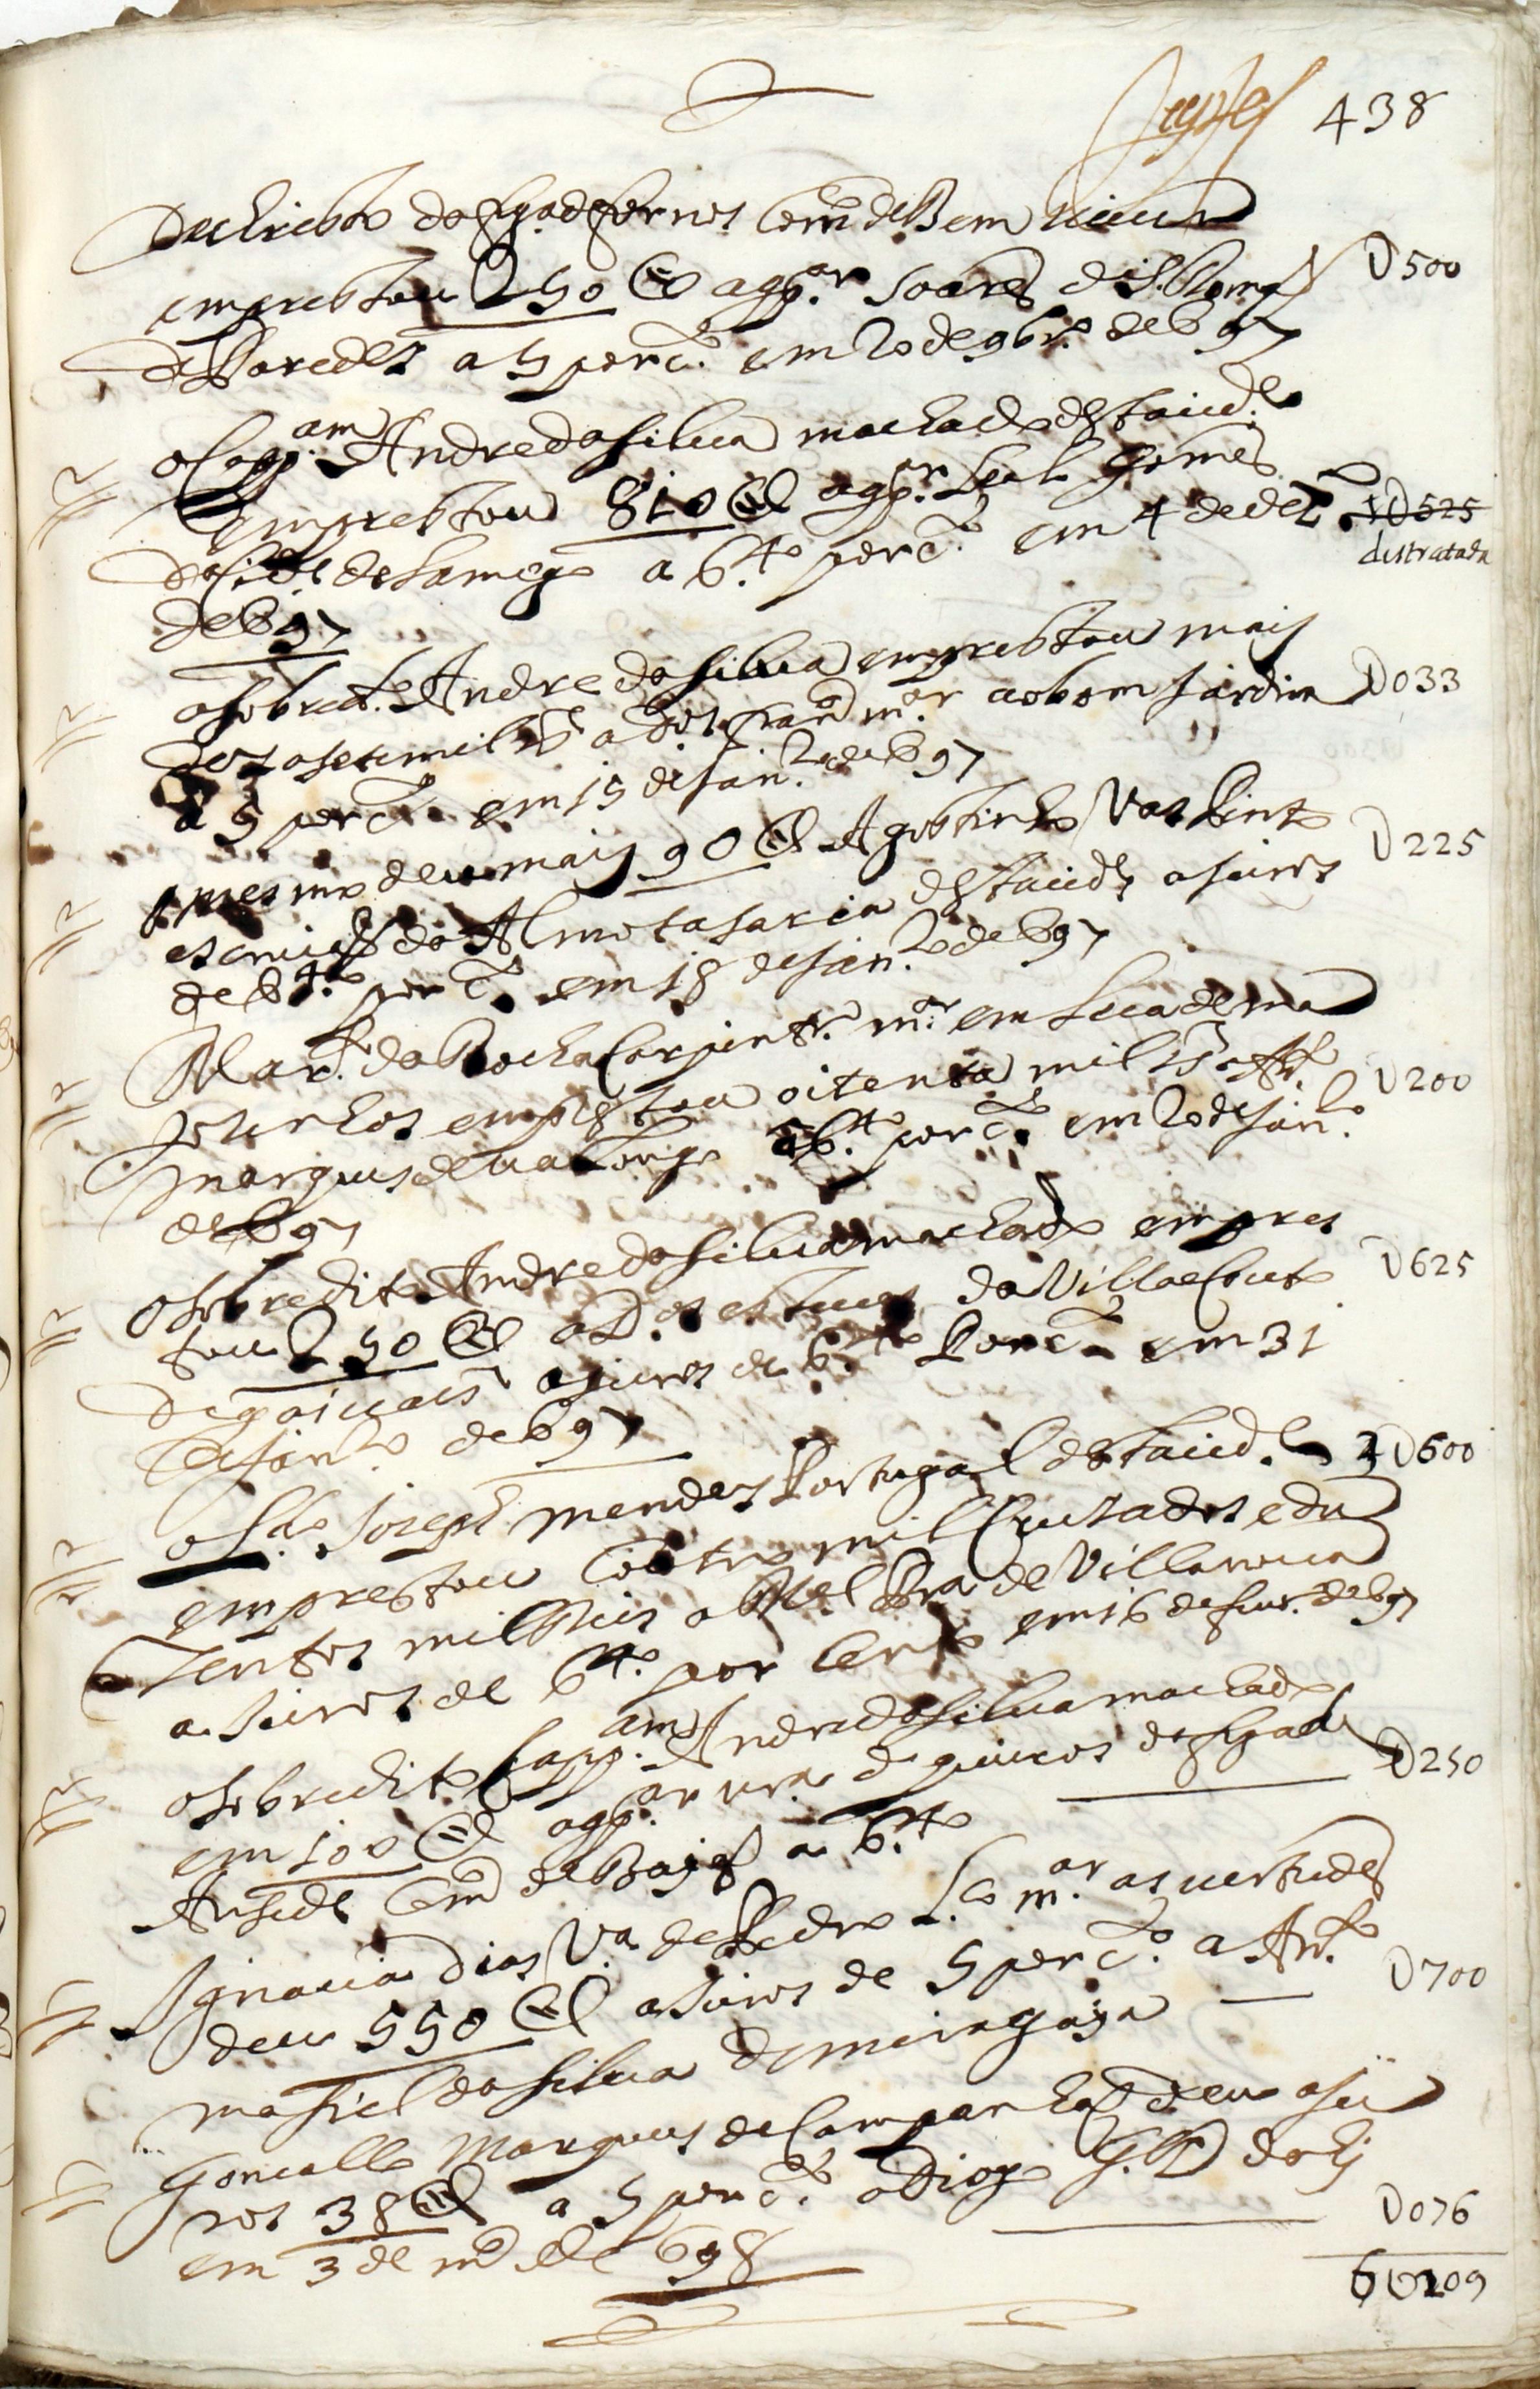 Rol de escrituras do tabelião António Paiva Aguiar de 1686 a 1698, realizado por ordem do juíz de fora da cidade